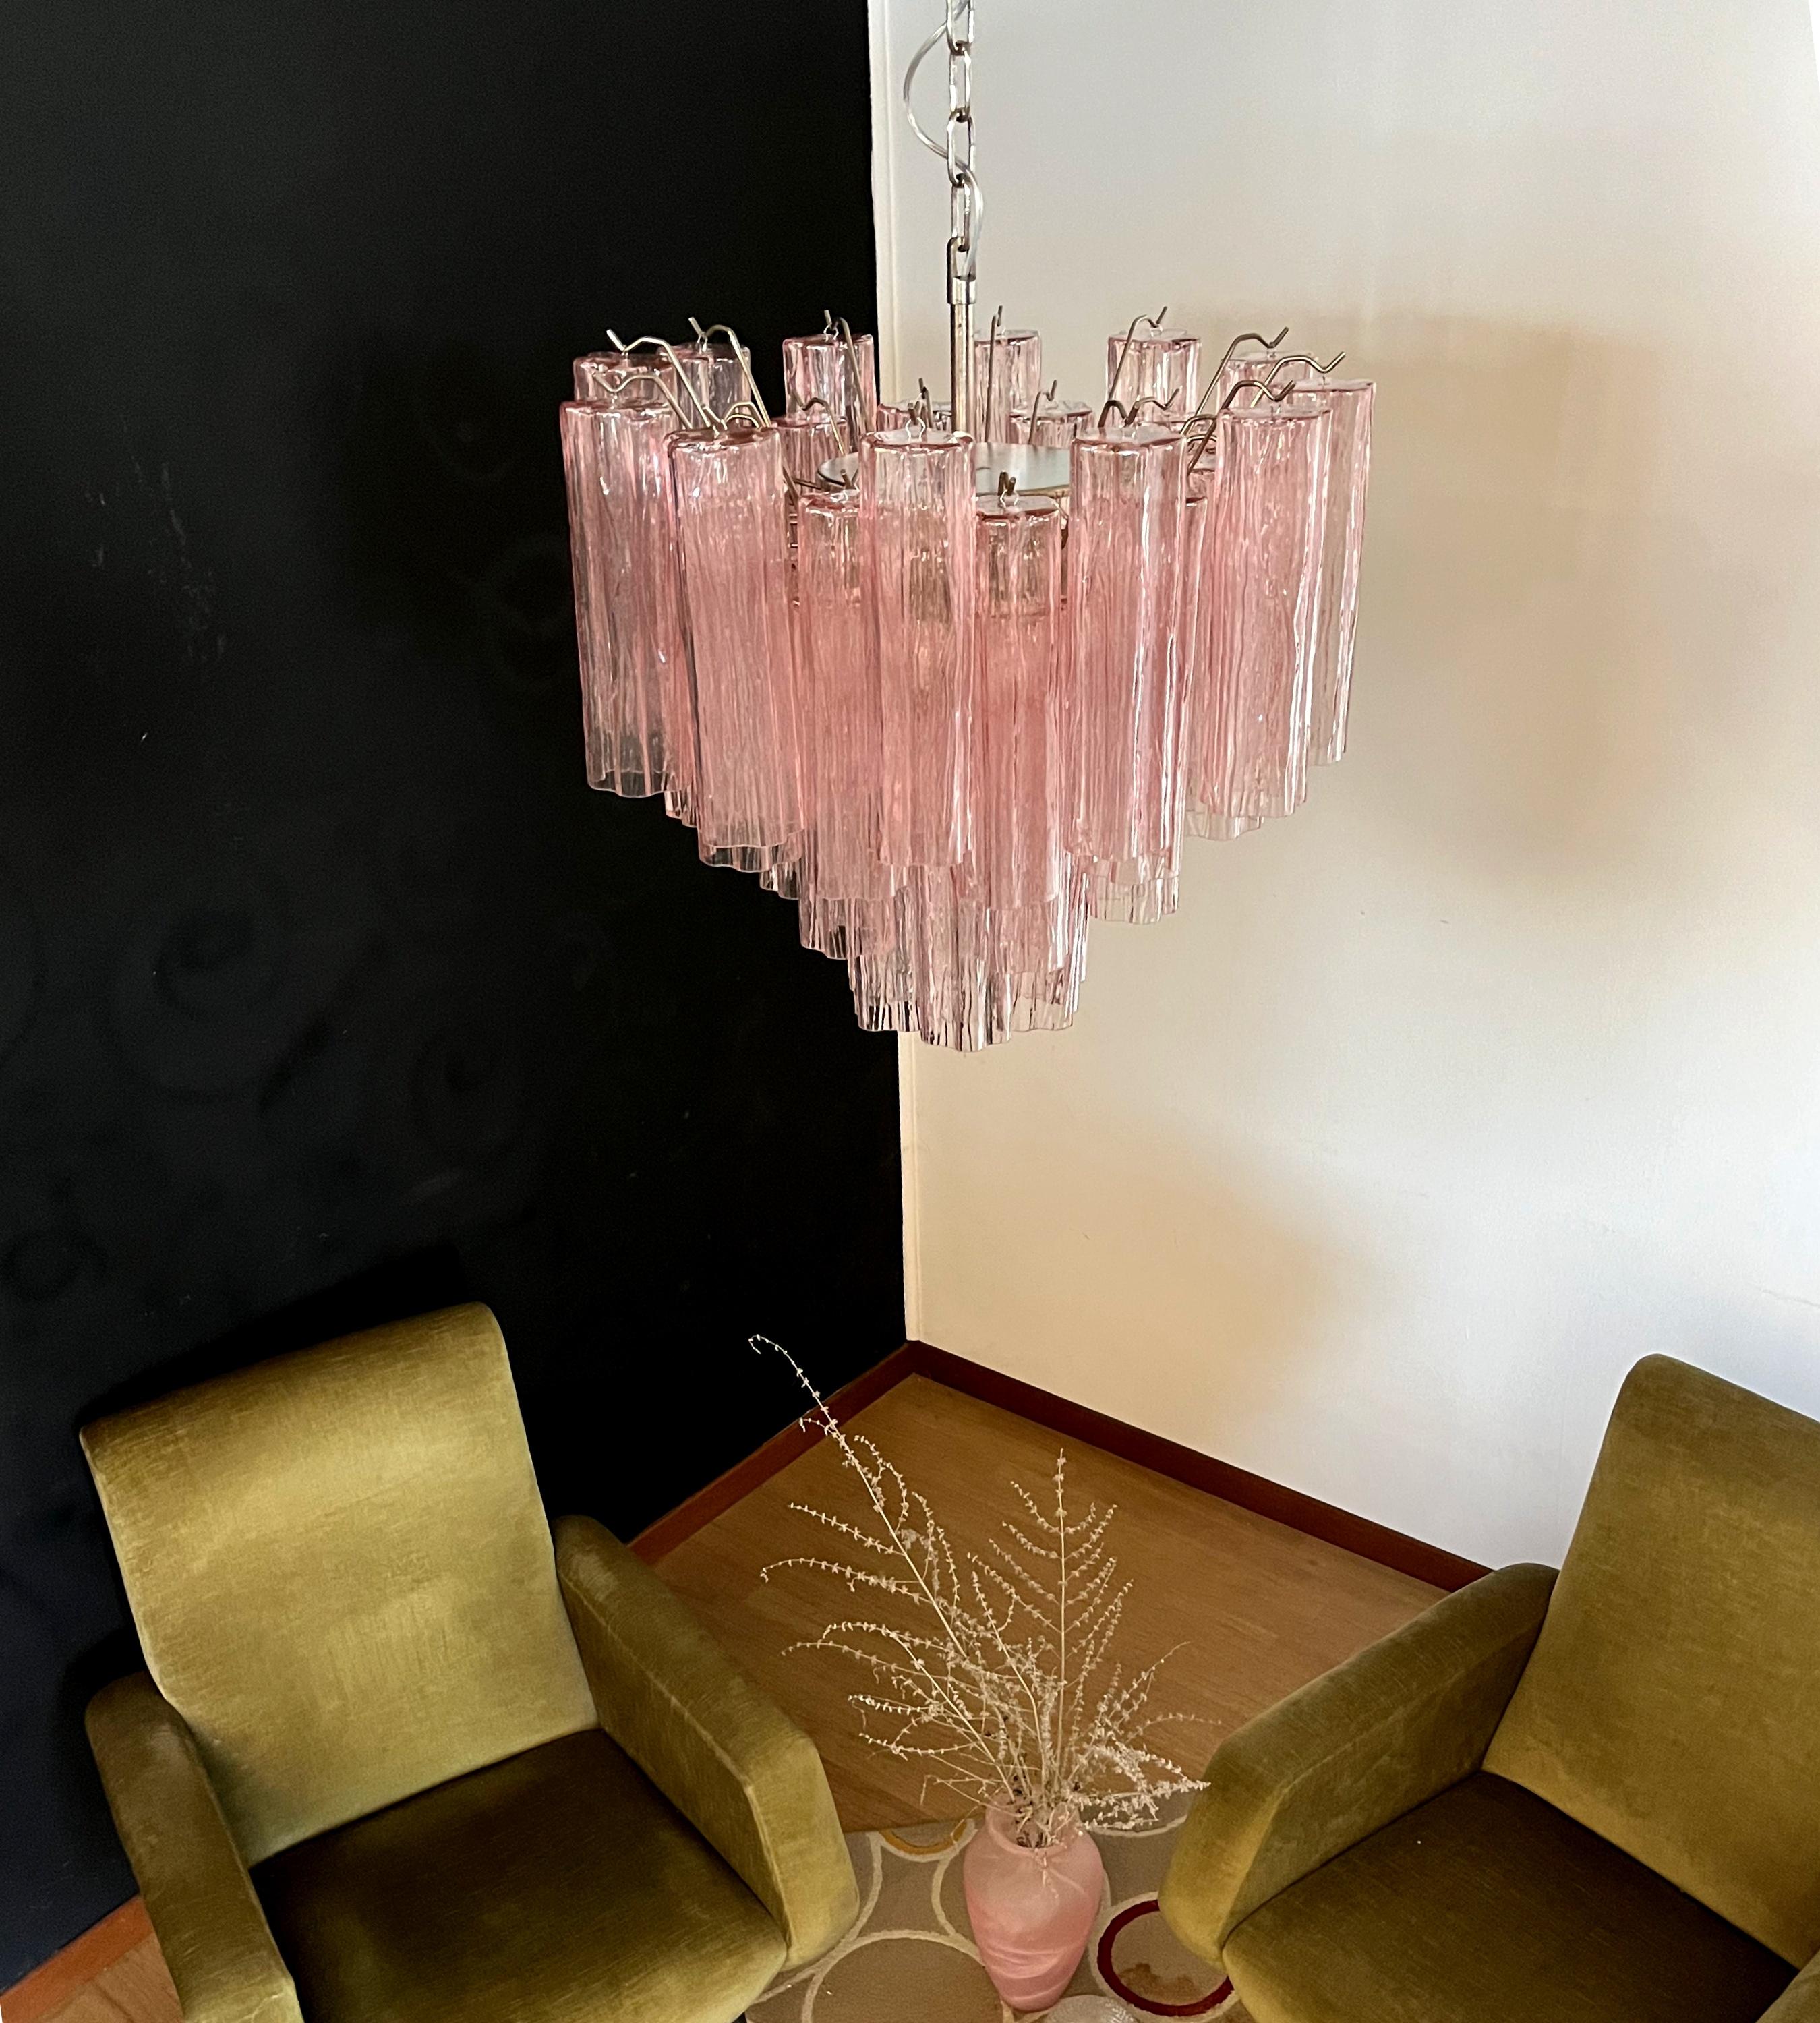 Fantastic Murano Glass Tube Chandelier - 36 pink glass tube In Good Condition For Sale In Gaiarine Frazione Francenigo (TV), IT